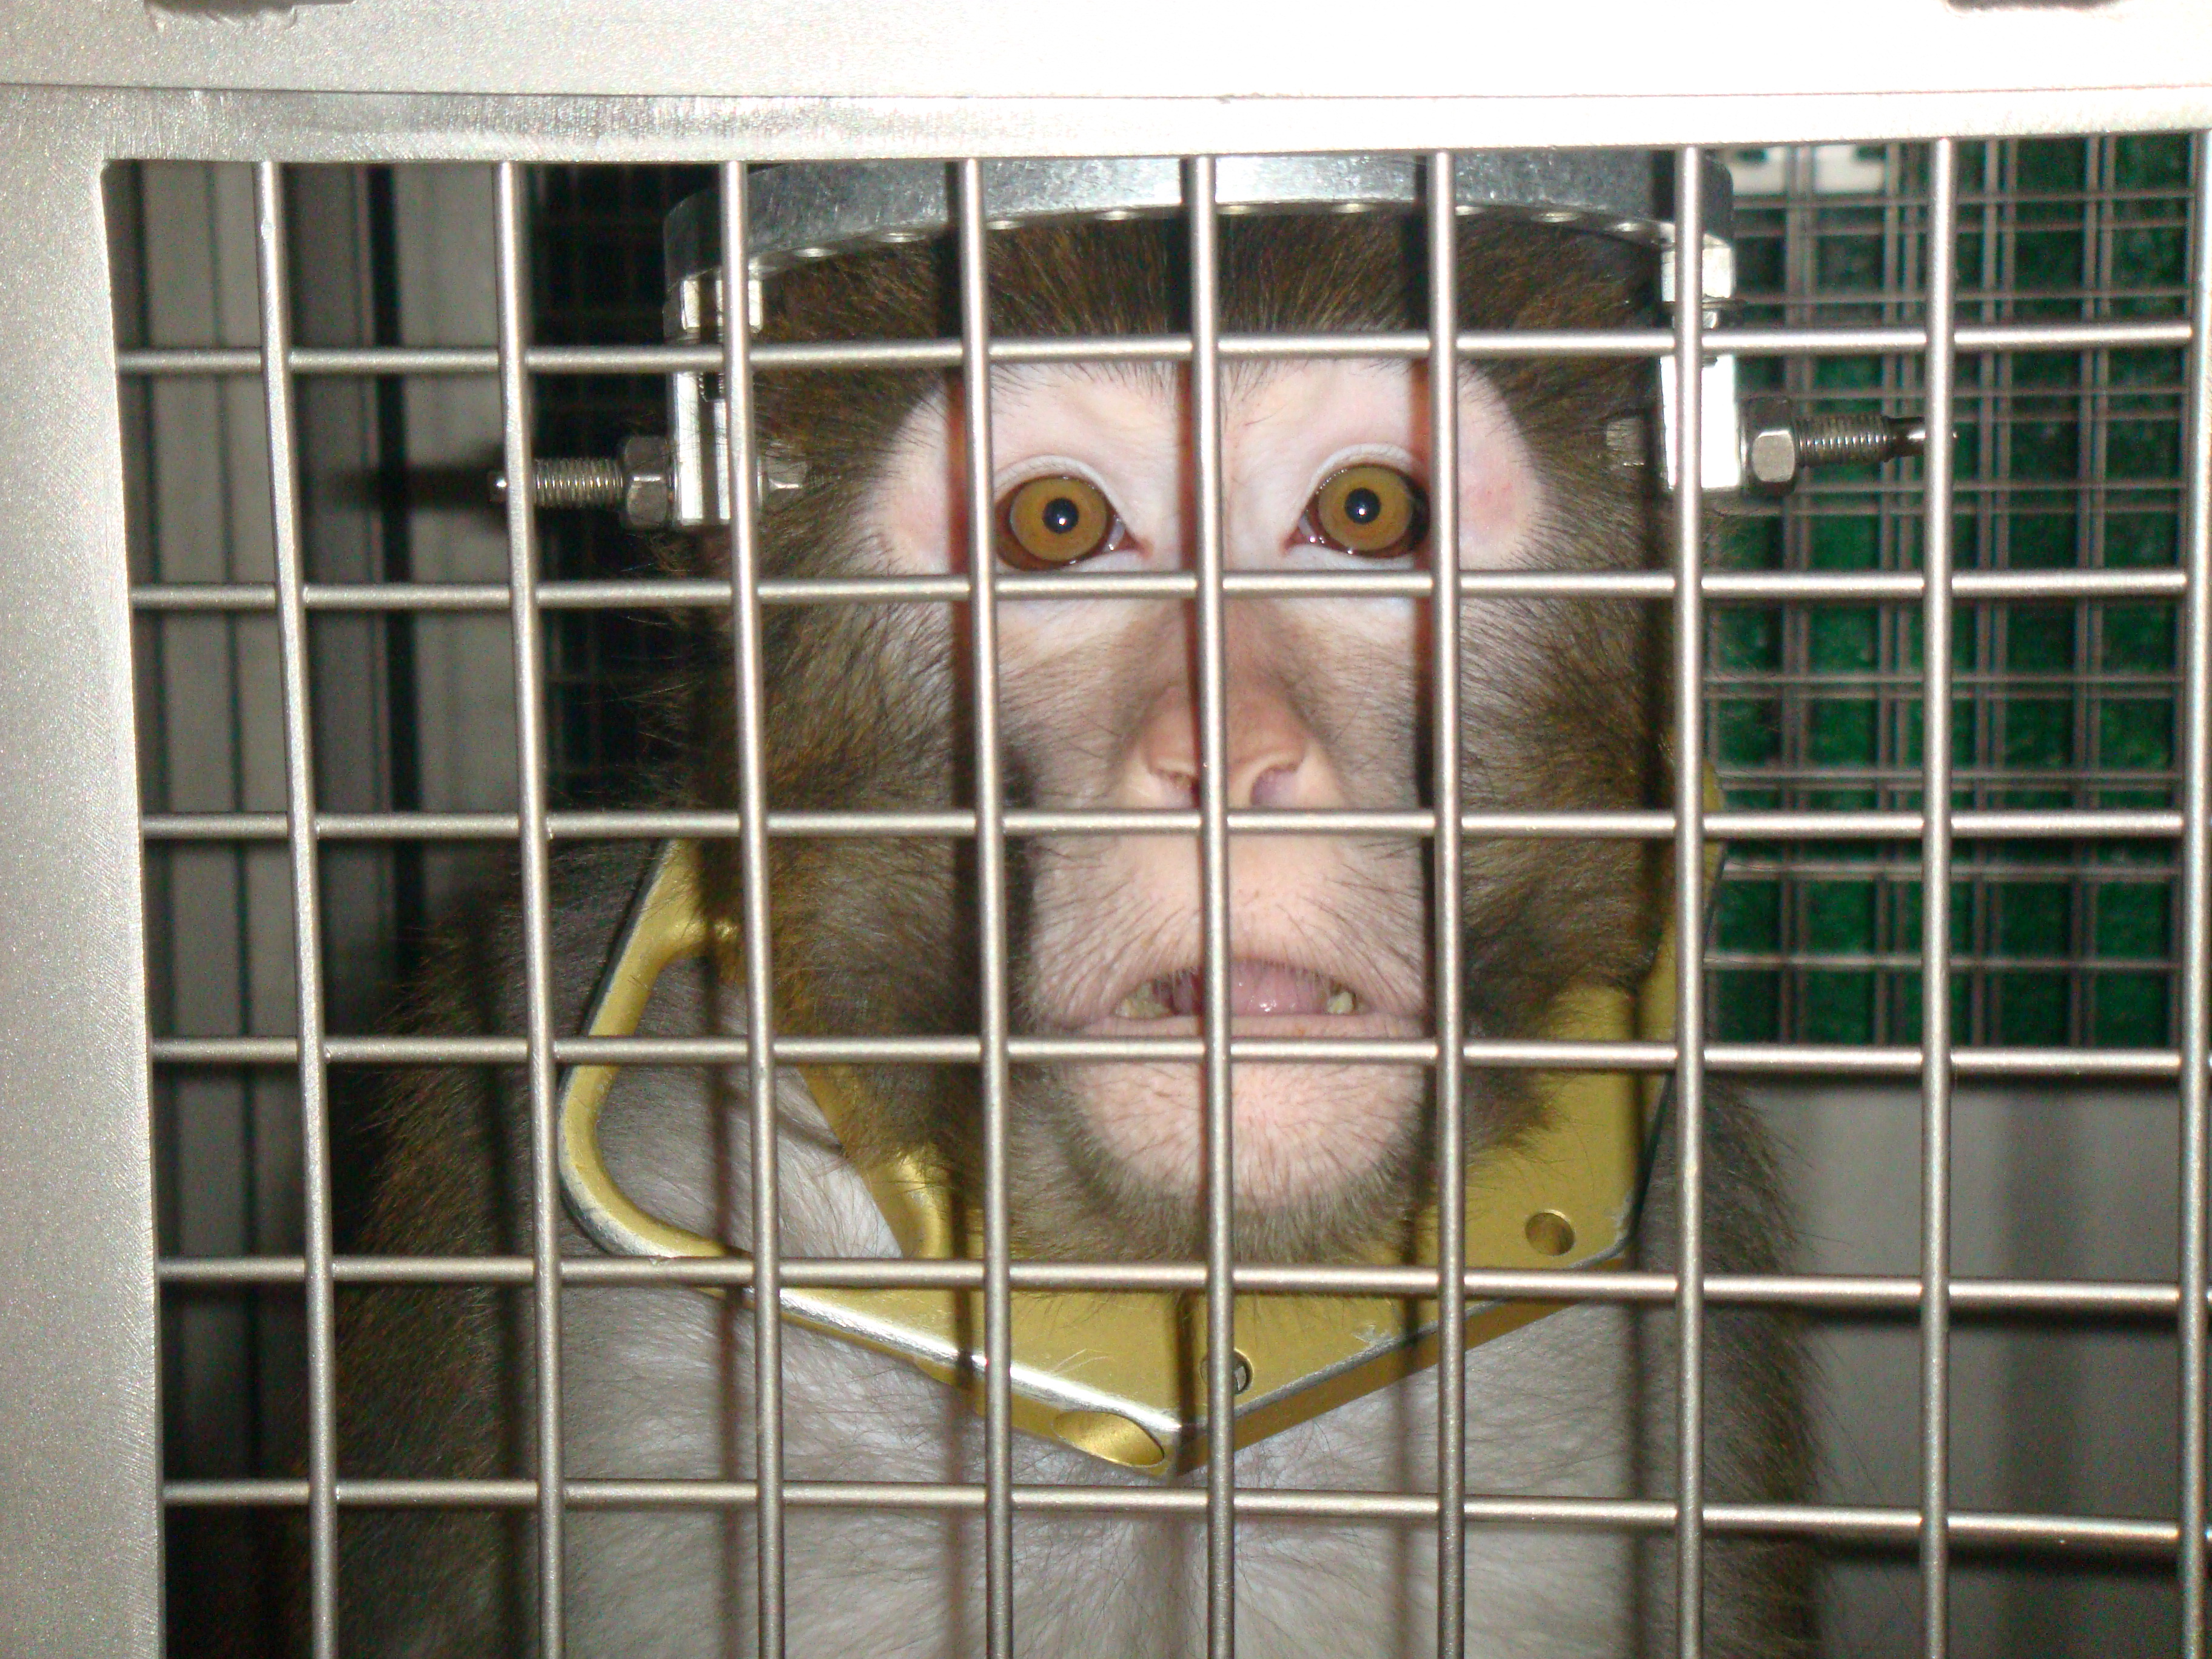 Feds Cite University of Utah Laboratory for Negligently Burning Monkey